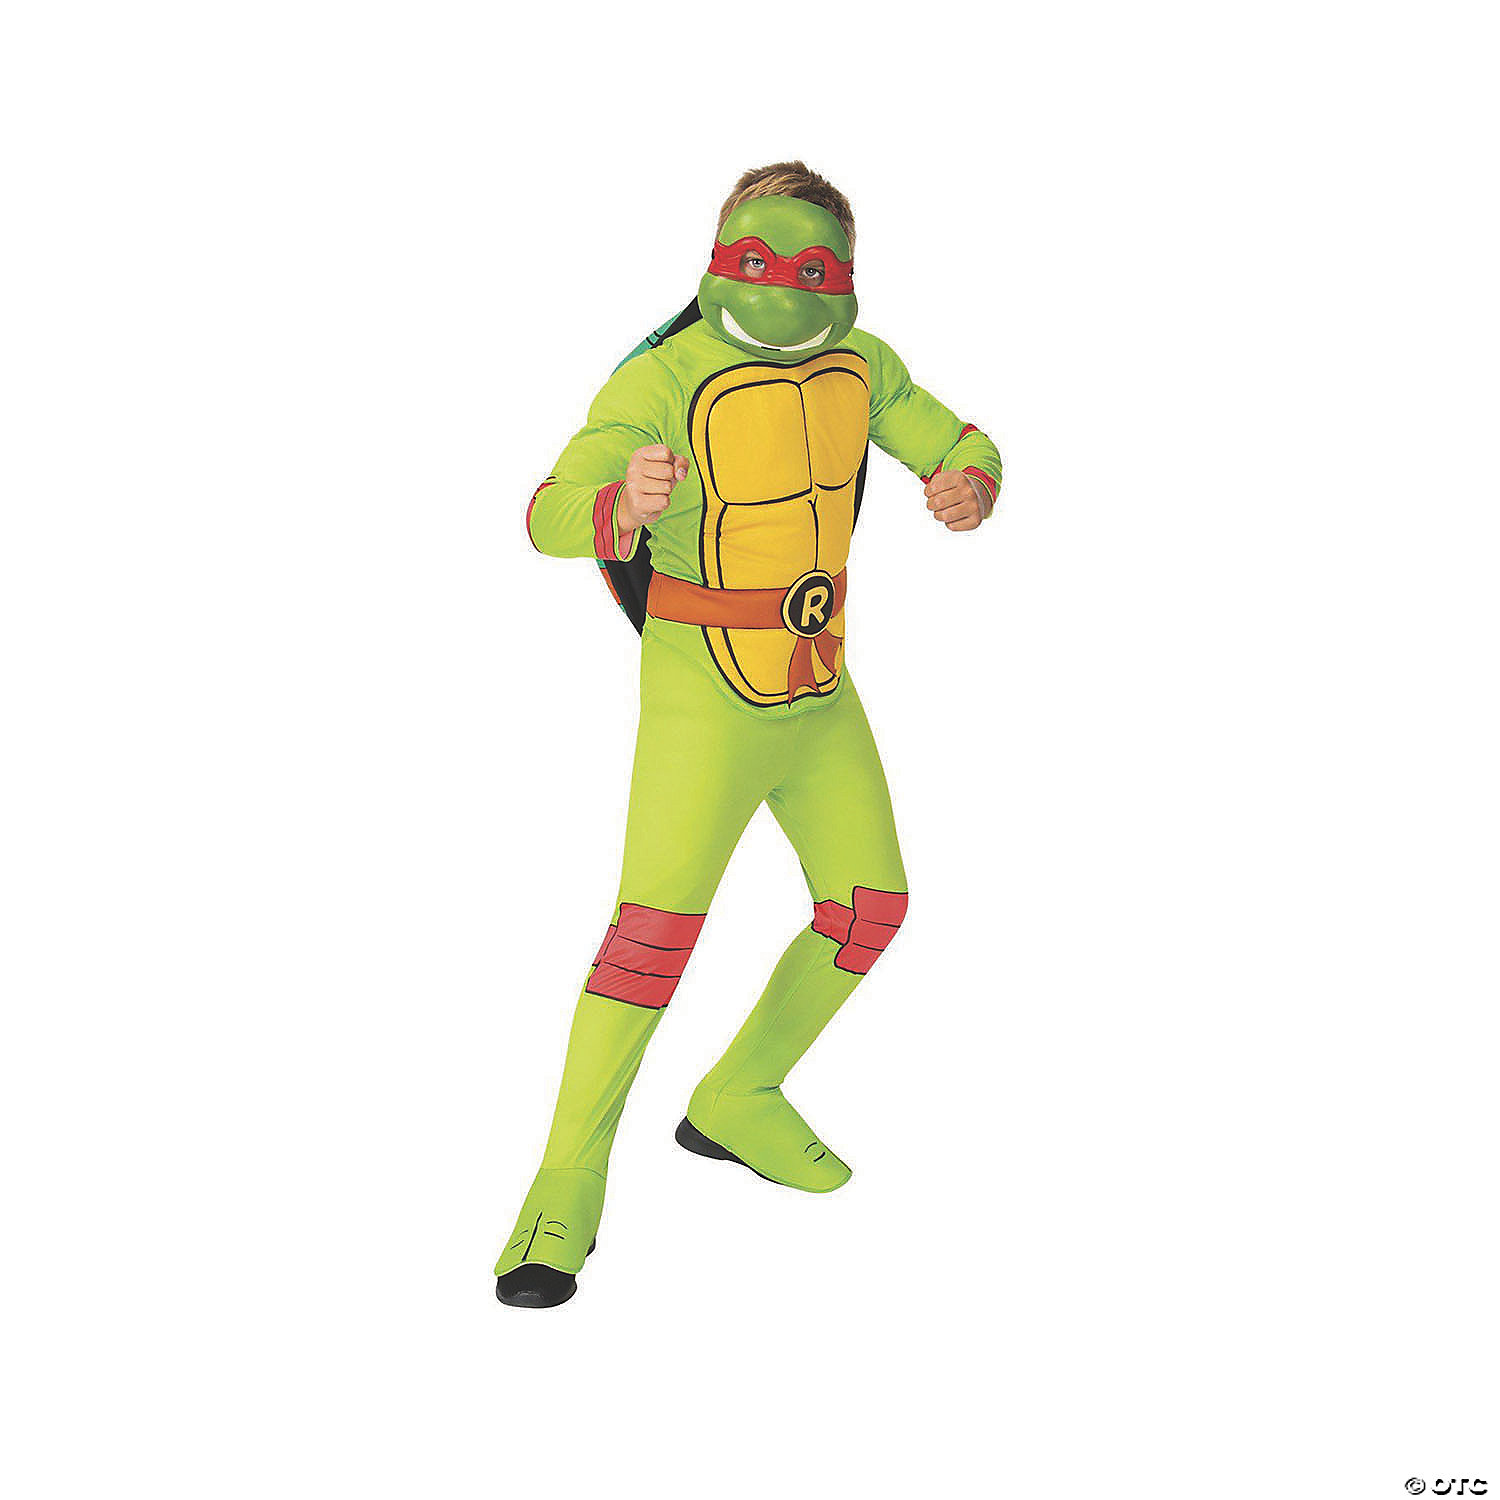 AME Kids' Ninja Turtles® Pajamas